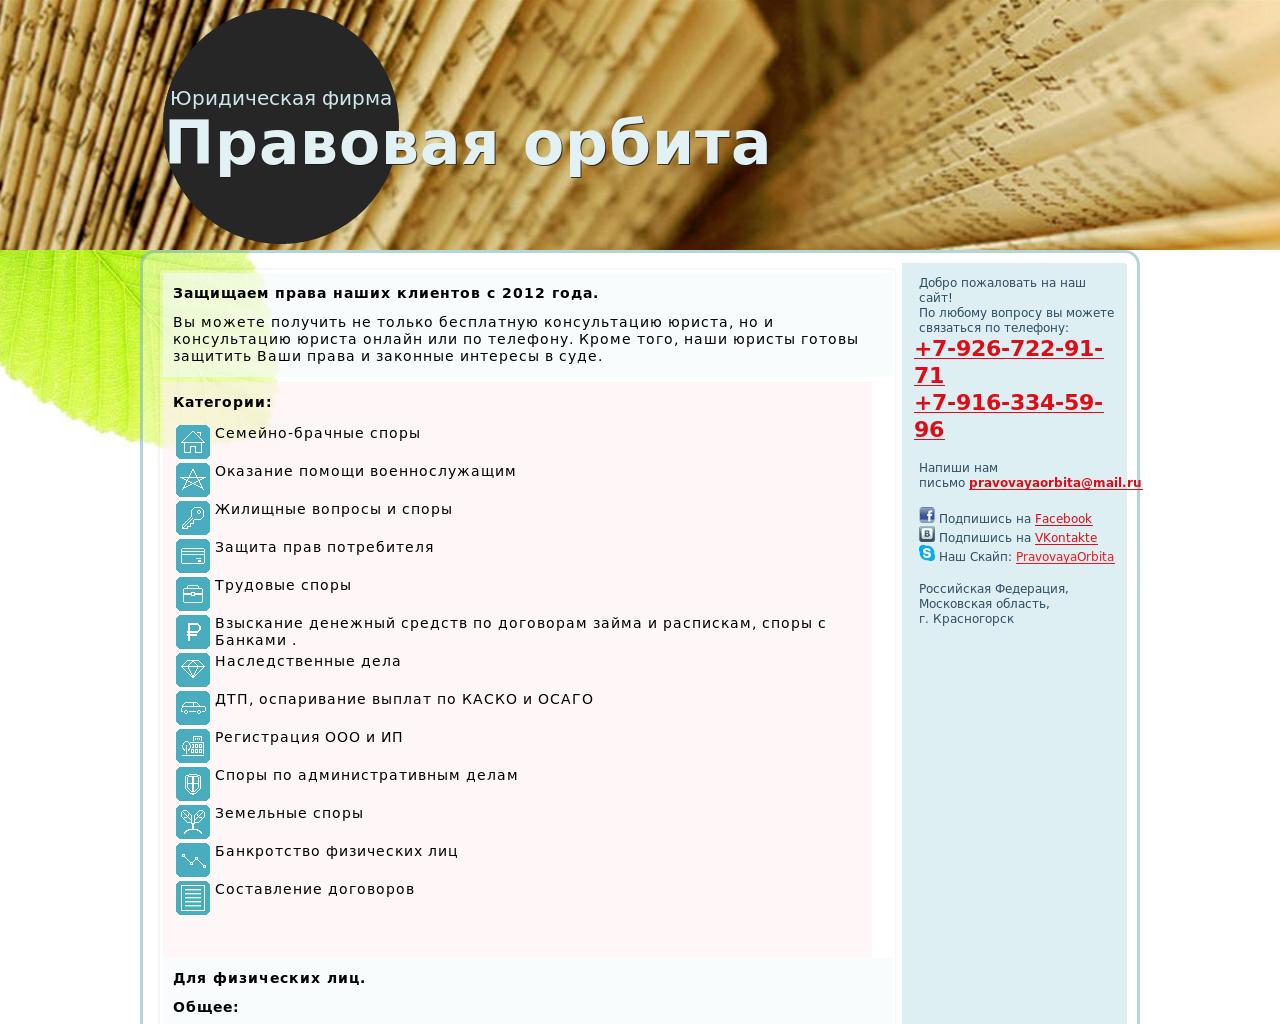 Изображение сайта prorb.ru в разрешении 1280x1024